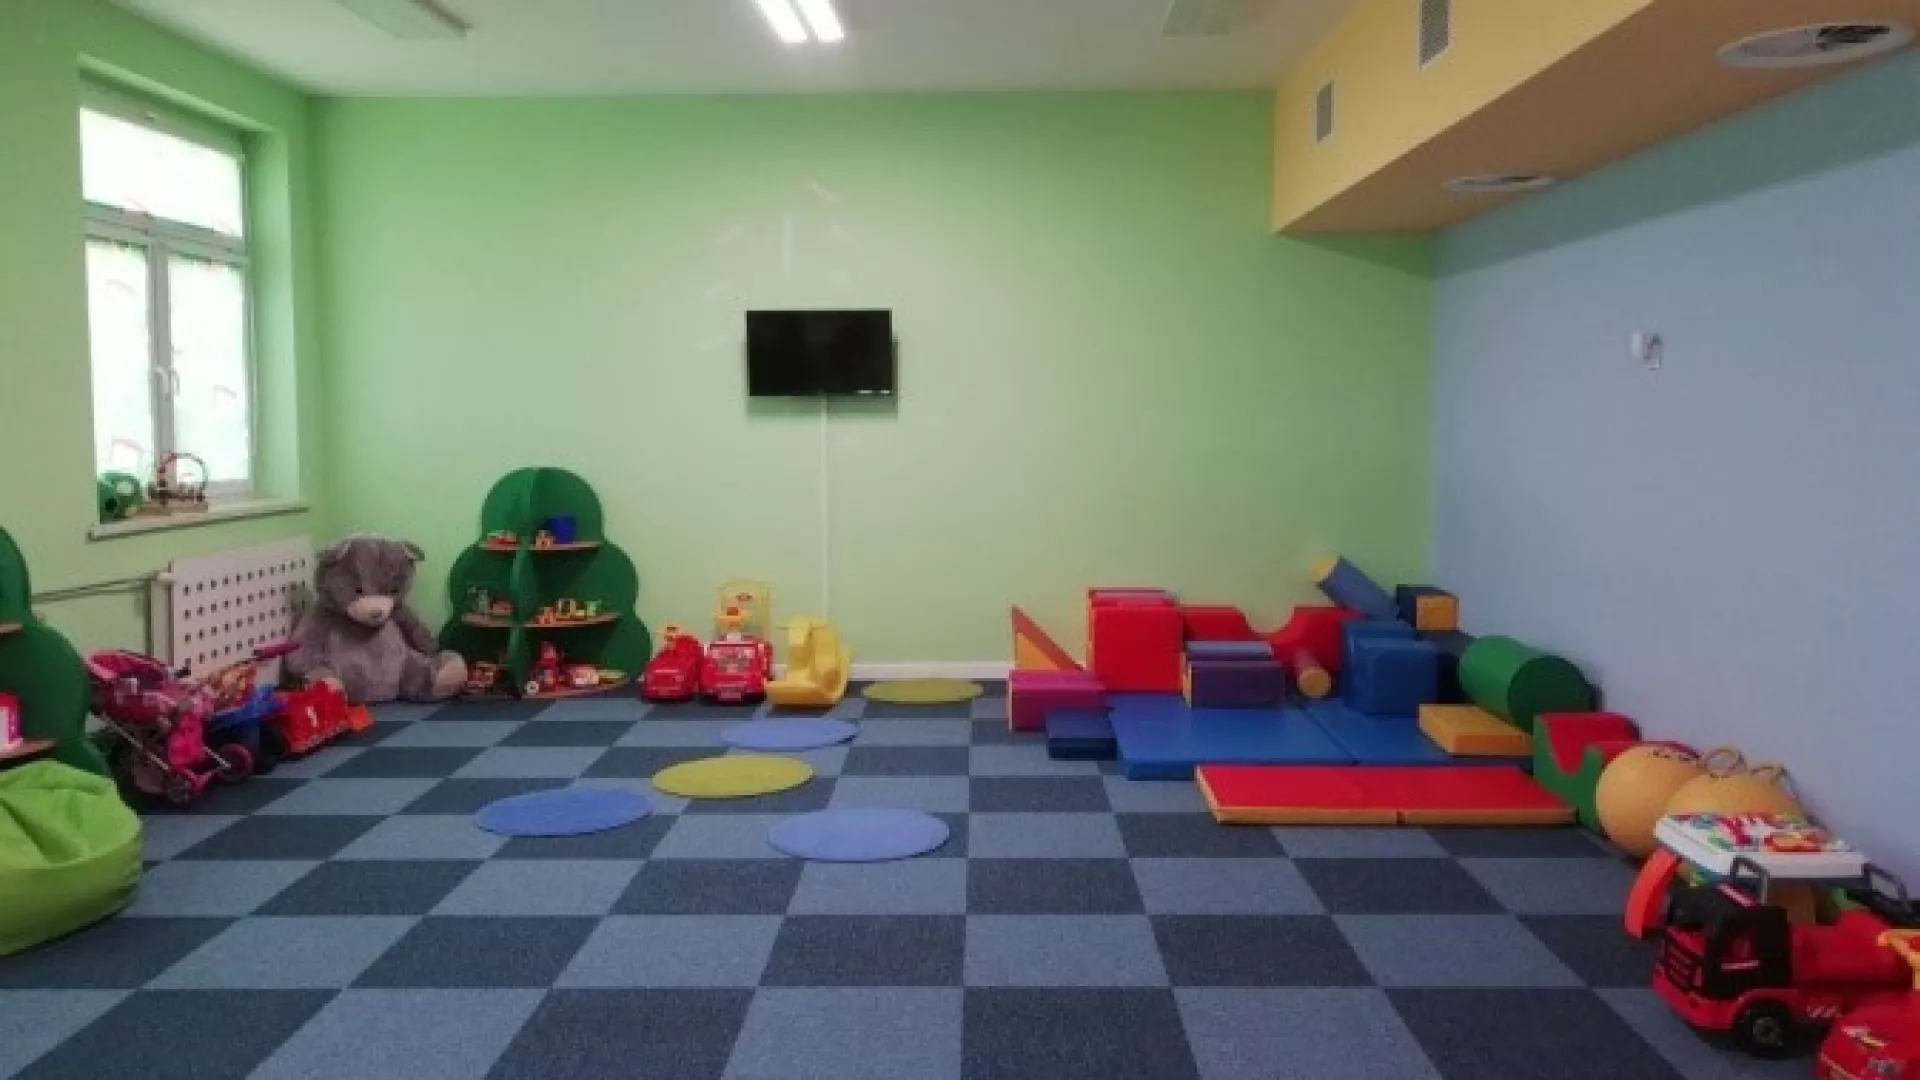 Duża sala z jadalnią, wyposażona w meble, zabawki i pomoce dydaktyczne odpowiednie dla dzieci do lat 3 wprowadzające je w świat zabawy i nauki